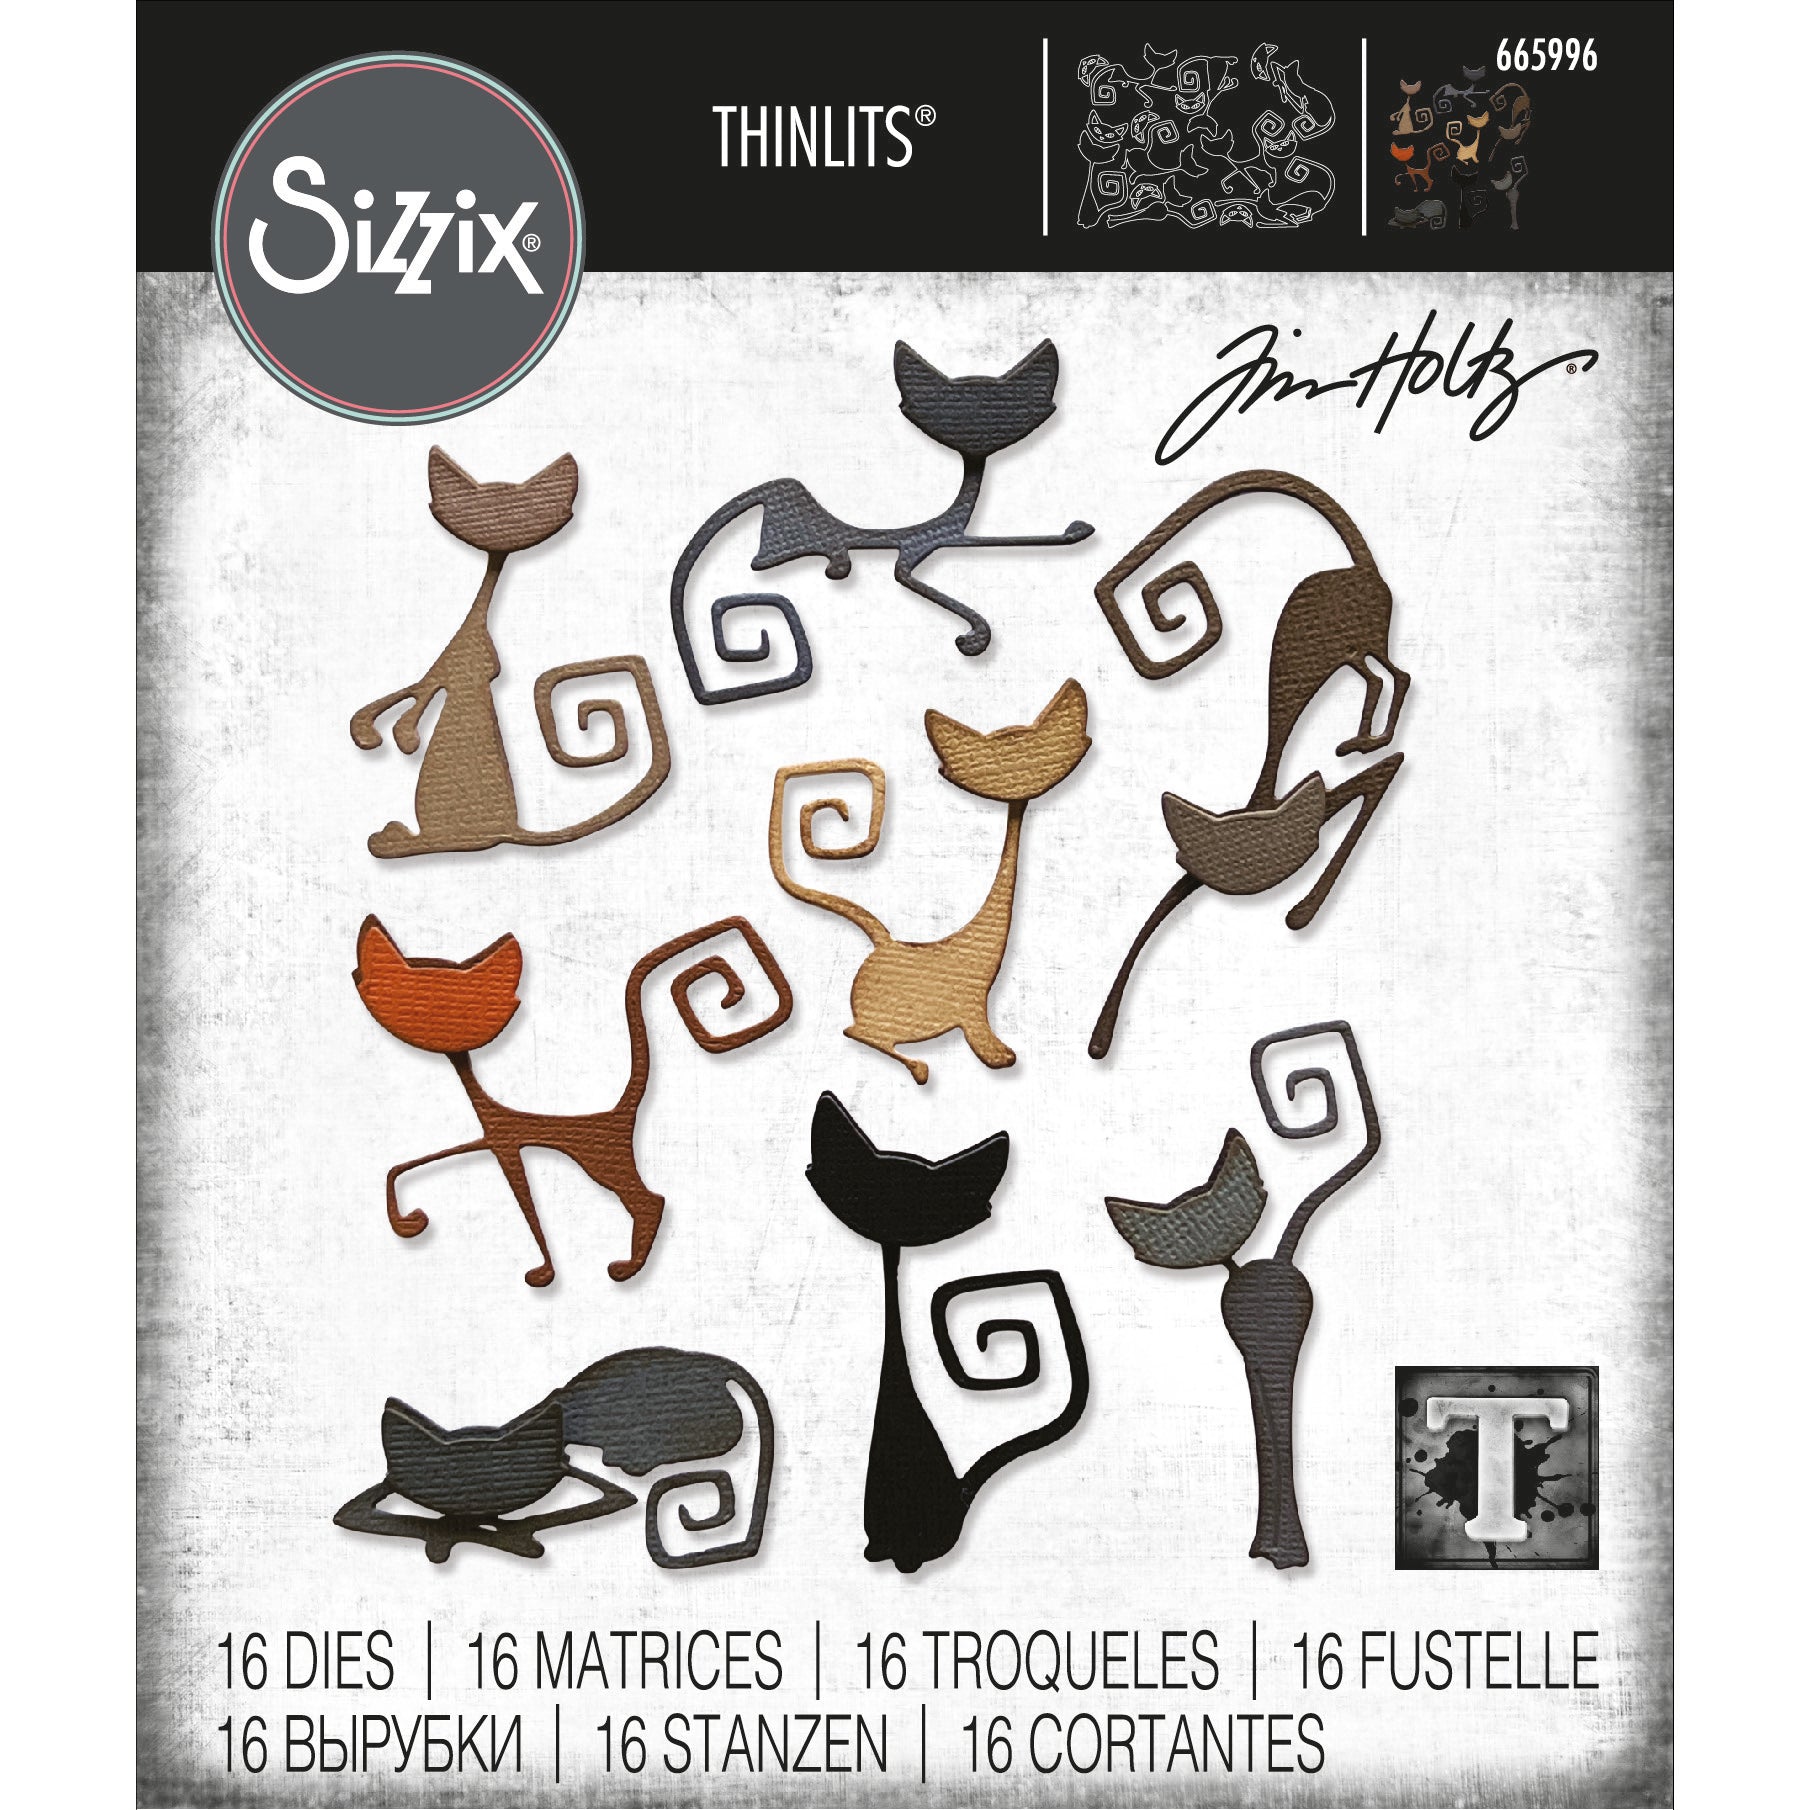 Sizzix Thinlits Die Set: Mischievous, by Tim Holtz (665996)